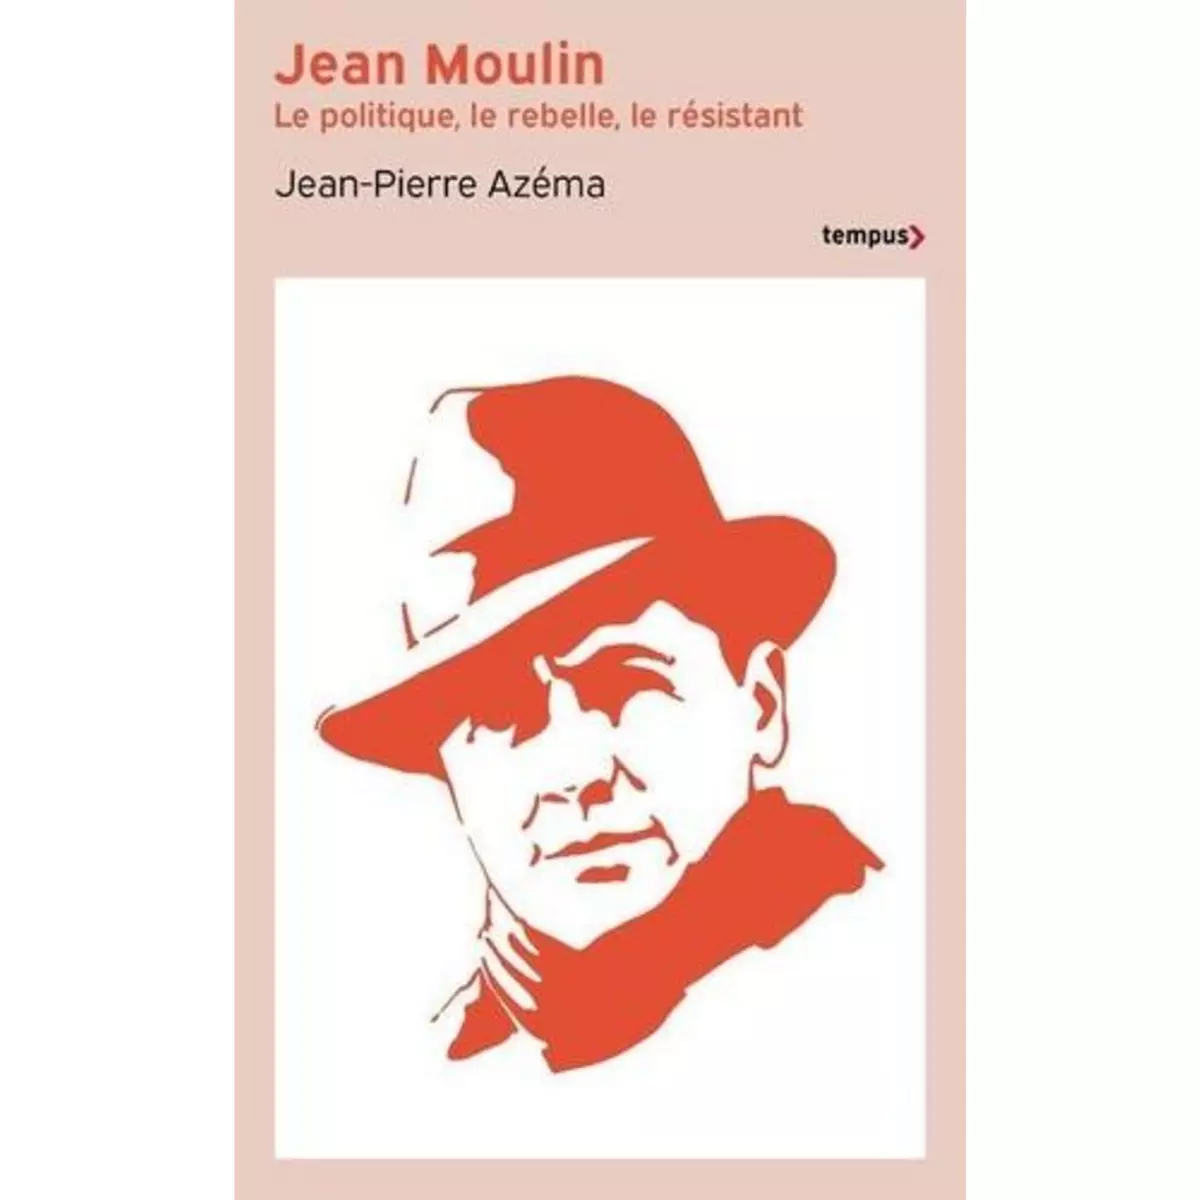  JEAN MOULIN. LE POLITIQUE, LE REBELLE, LE RESISTANT, Azéma Jean-Pierre